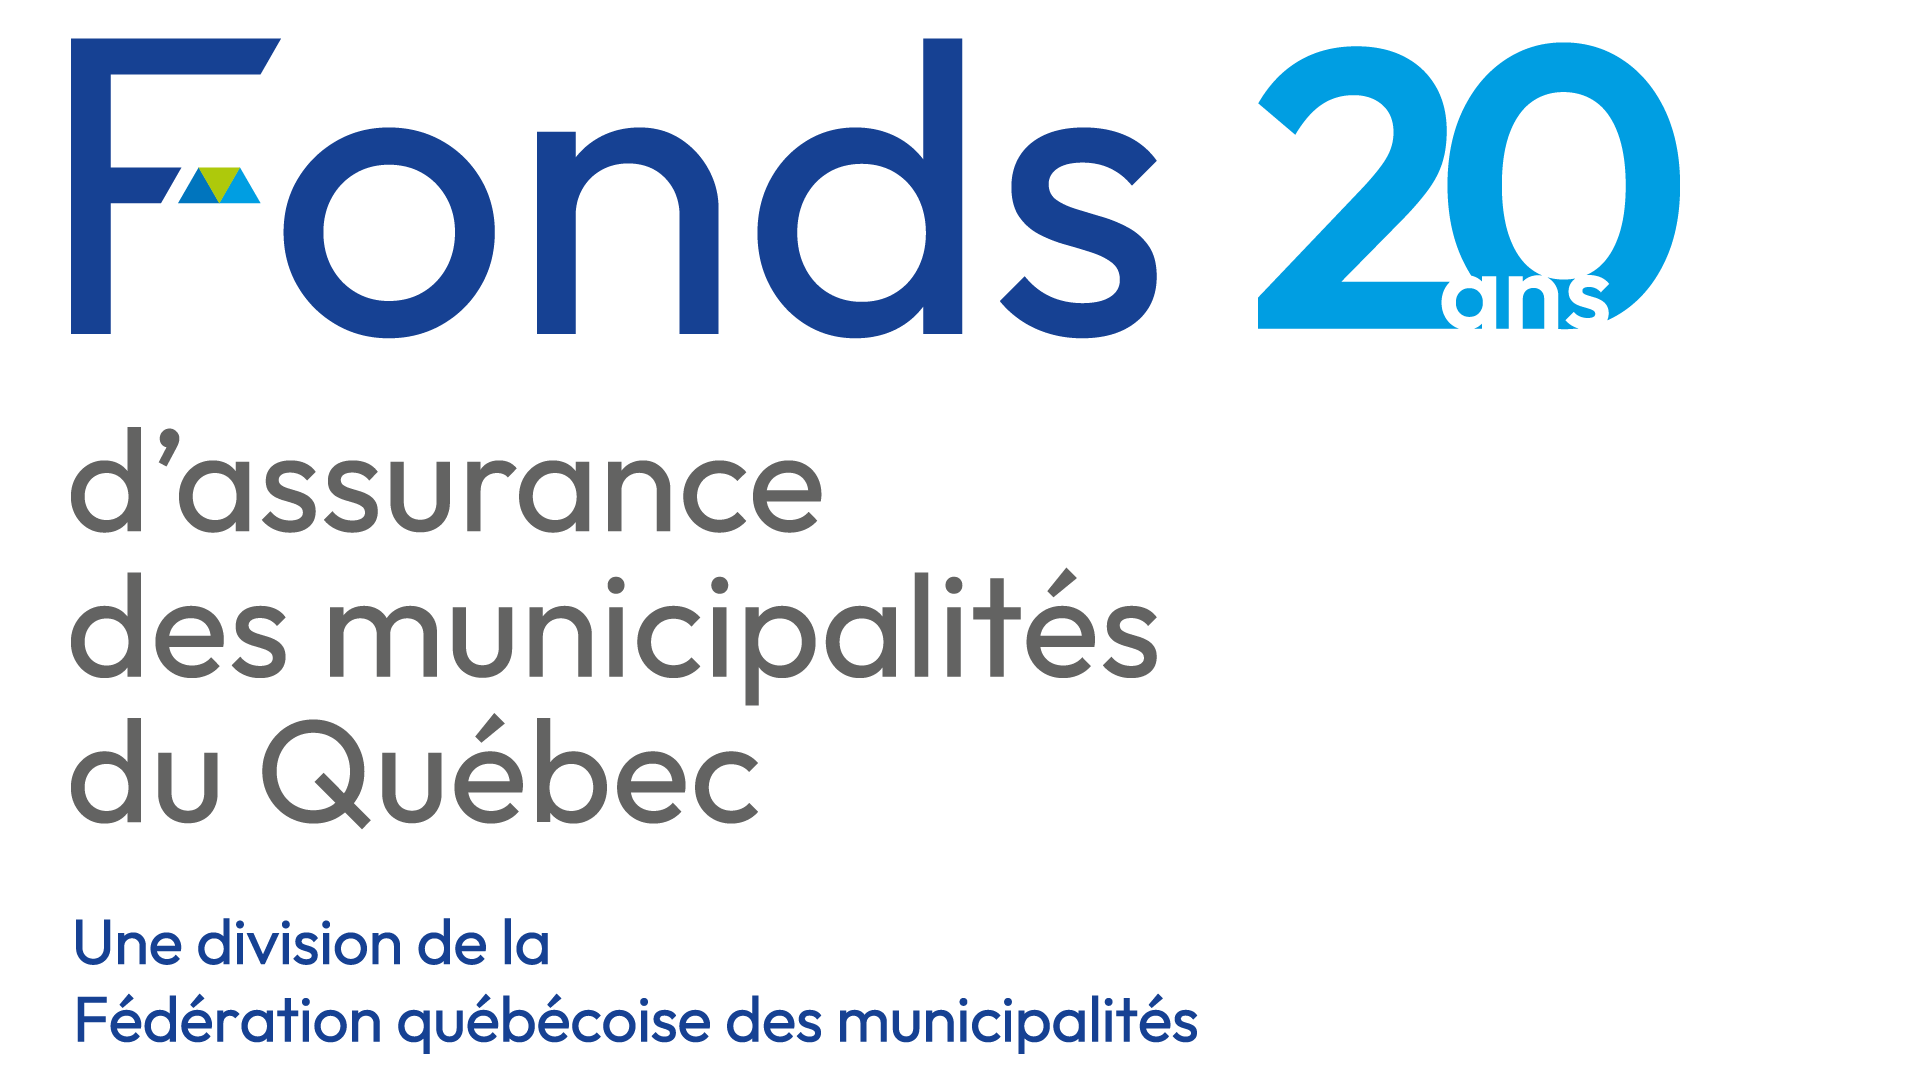 Fonds d’assurance des municipalités du Québec